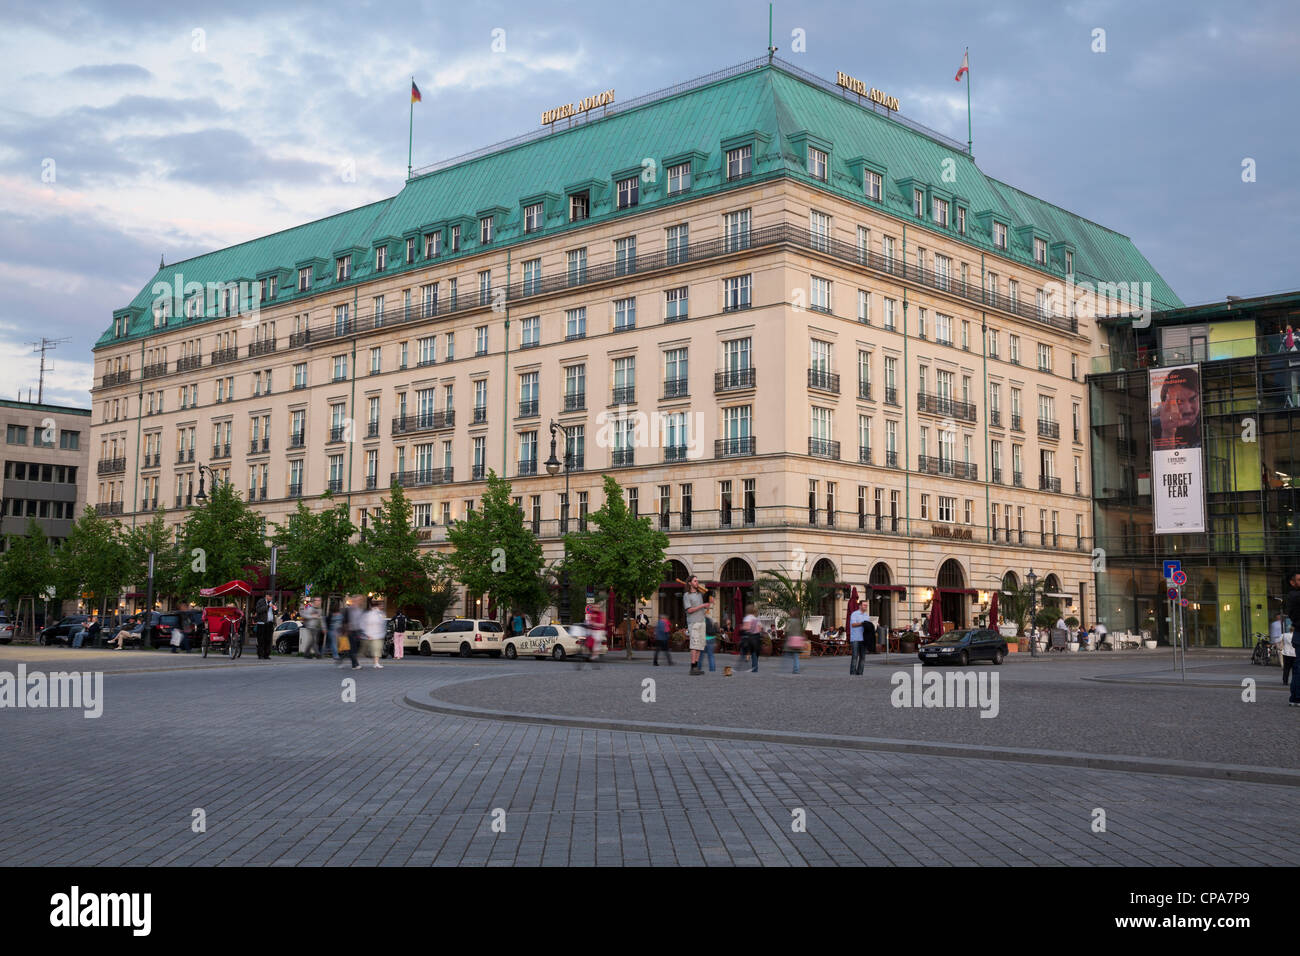 Hôtel Adlon Kempinski sur la Pariser Platz, Berlin, Allemagne Banque D'Images